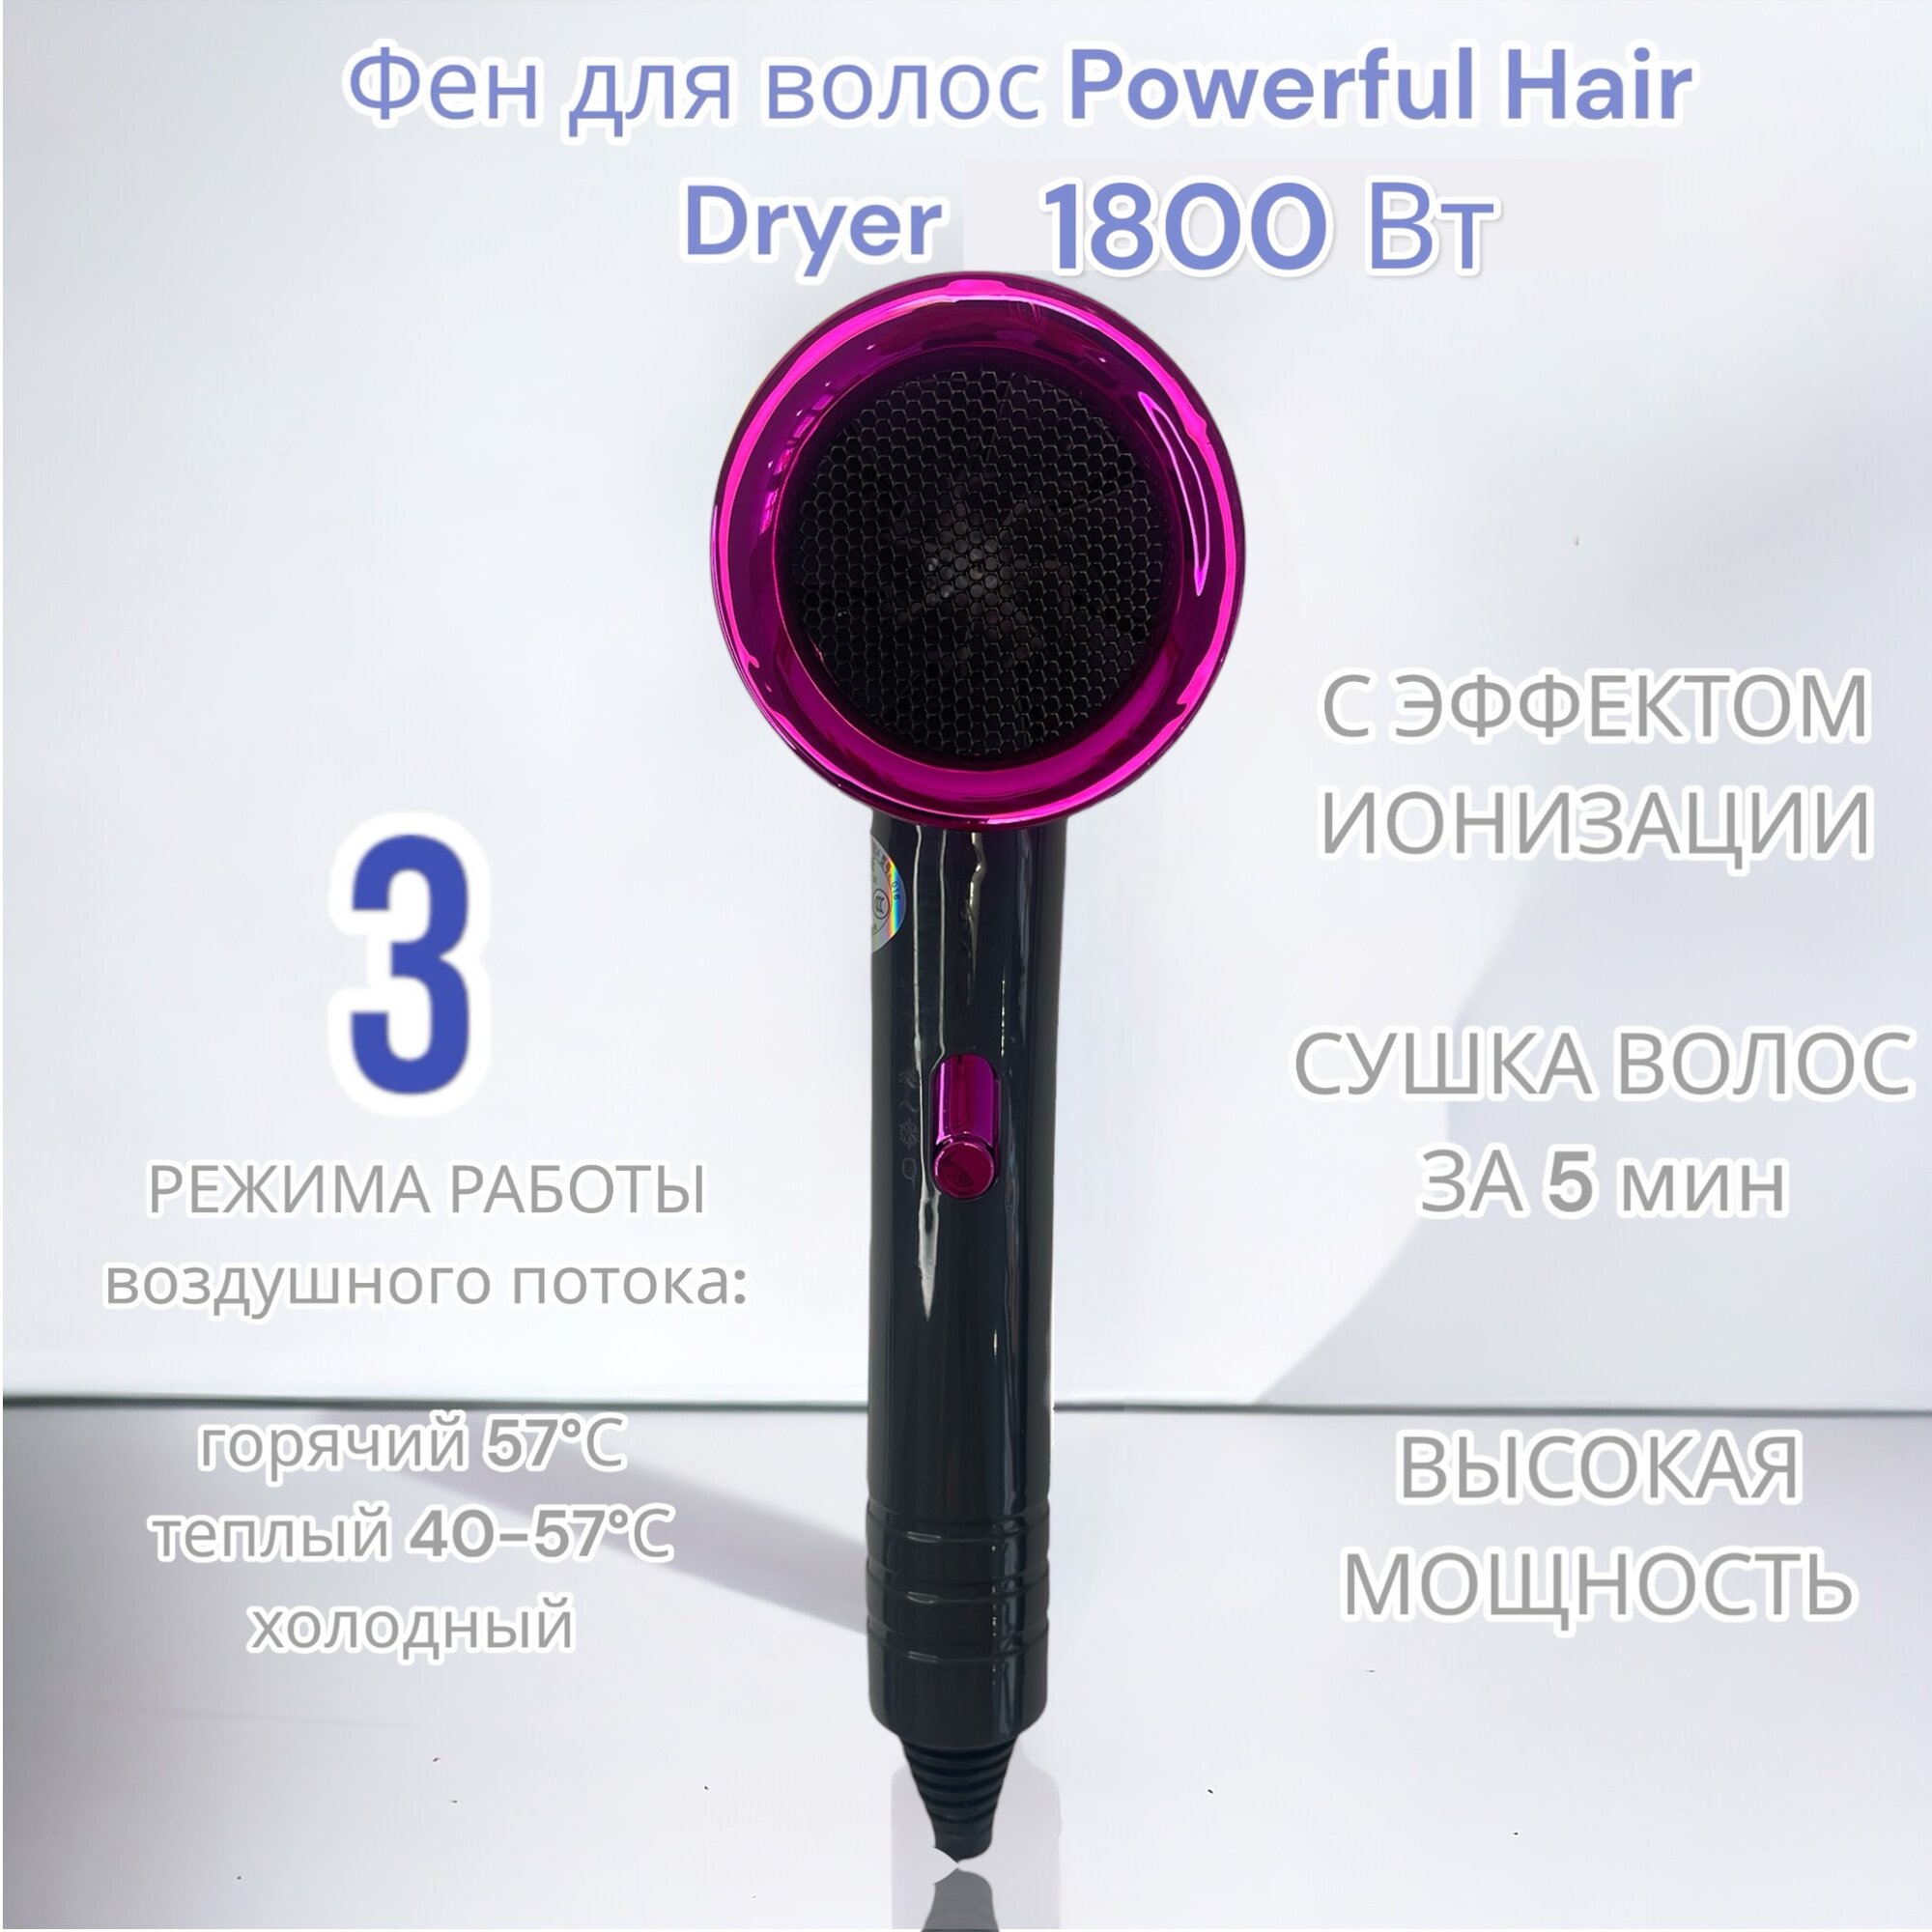 Фен для волос Powerful Hair Dryer 1800 Вт с ионизацией / 2 скорости / 3 режима